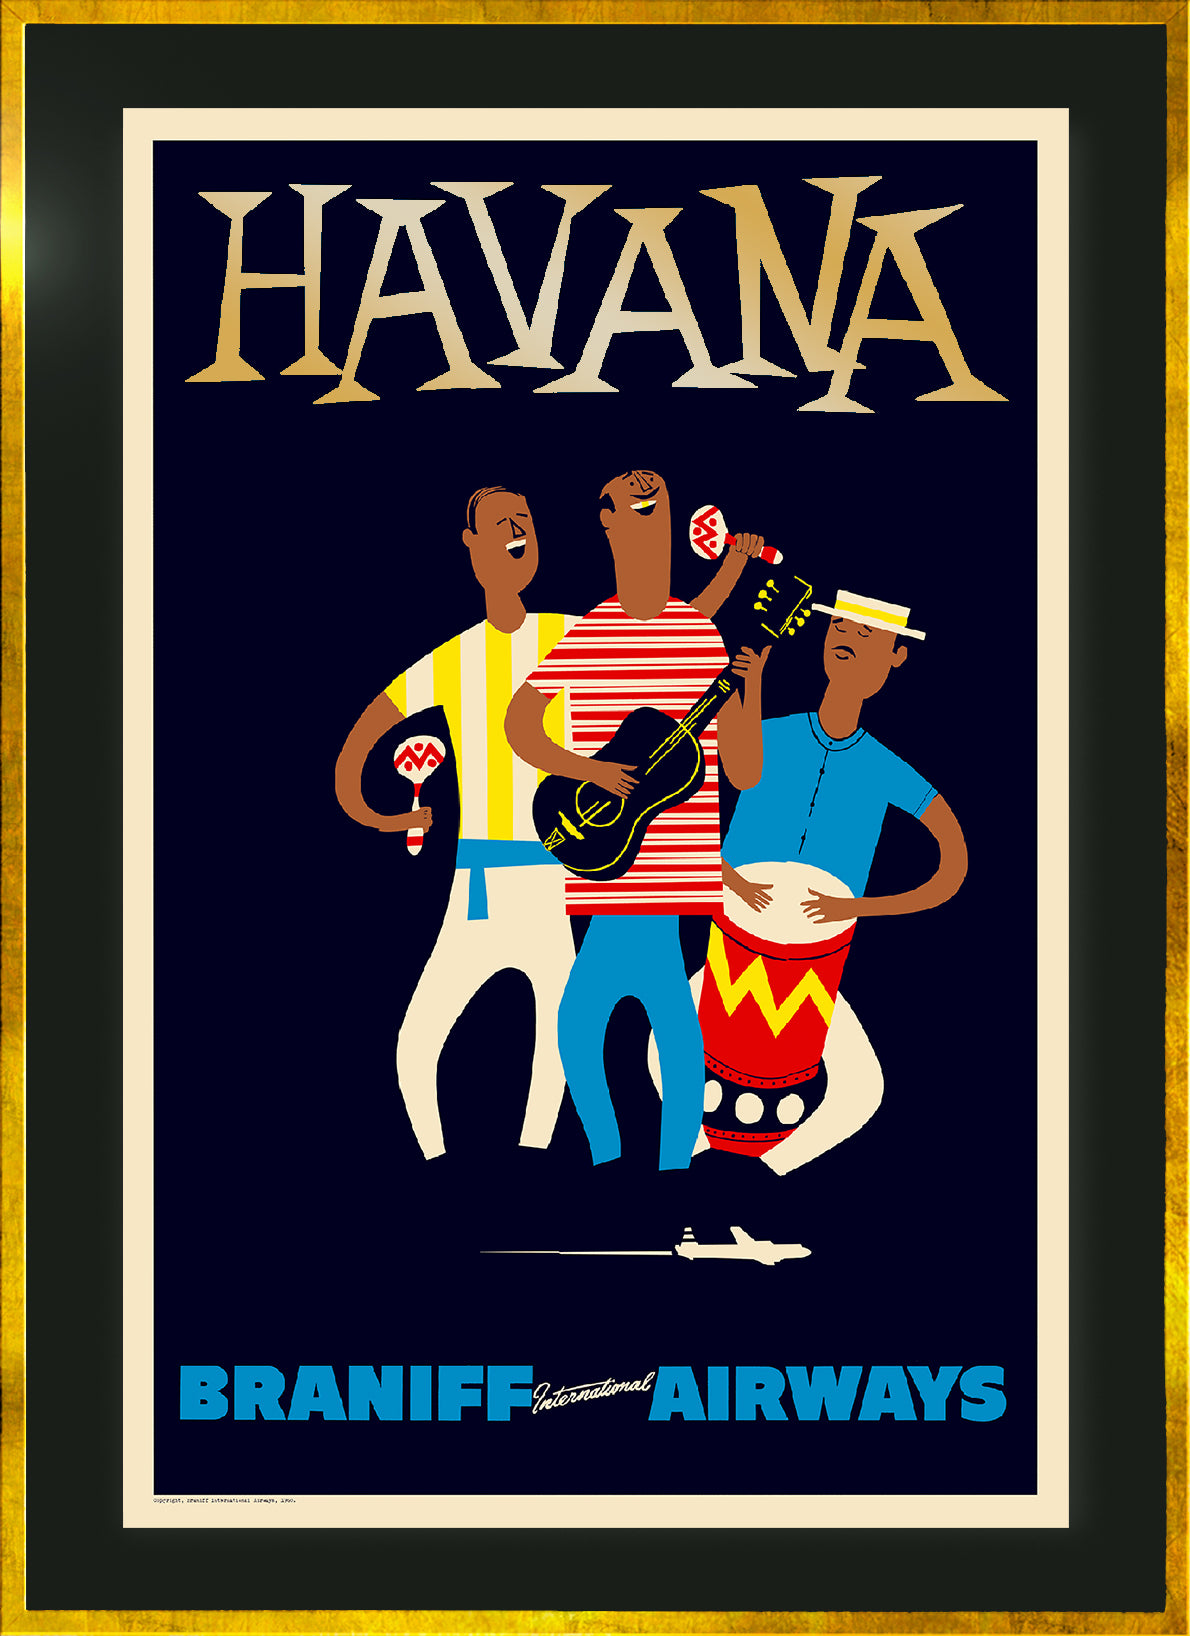 Havana, Braniff International Airways, 1950s [Musicians].